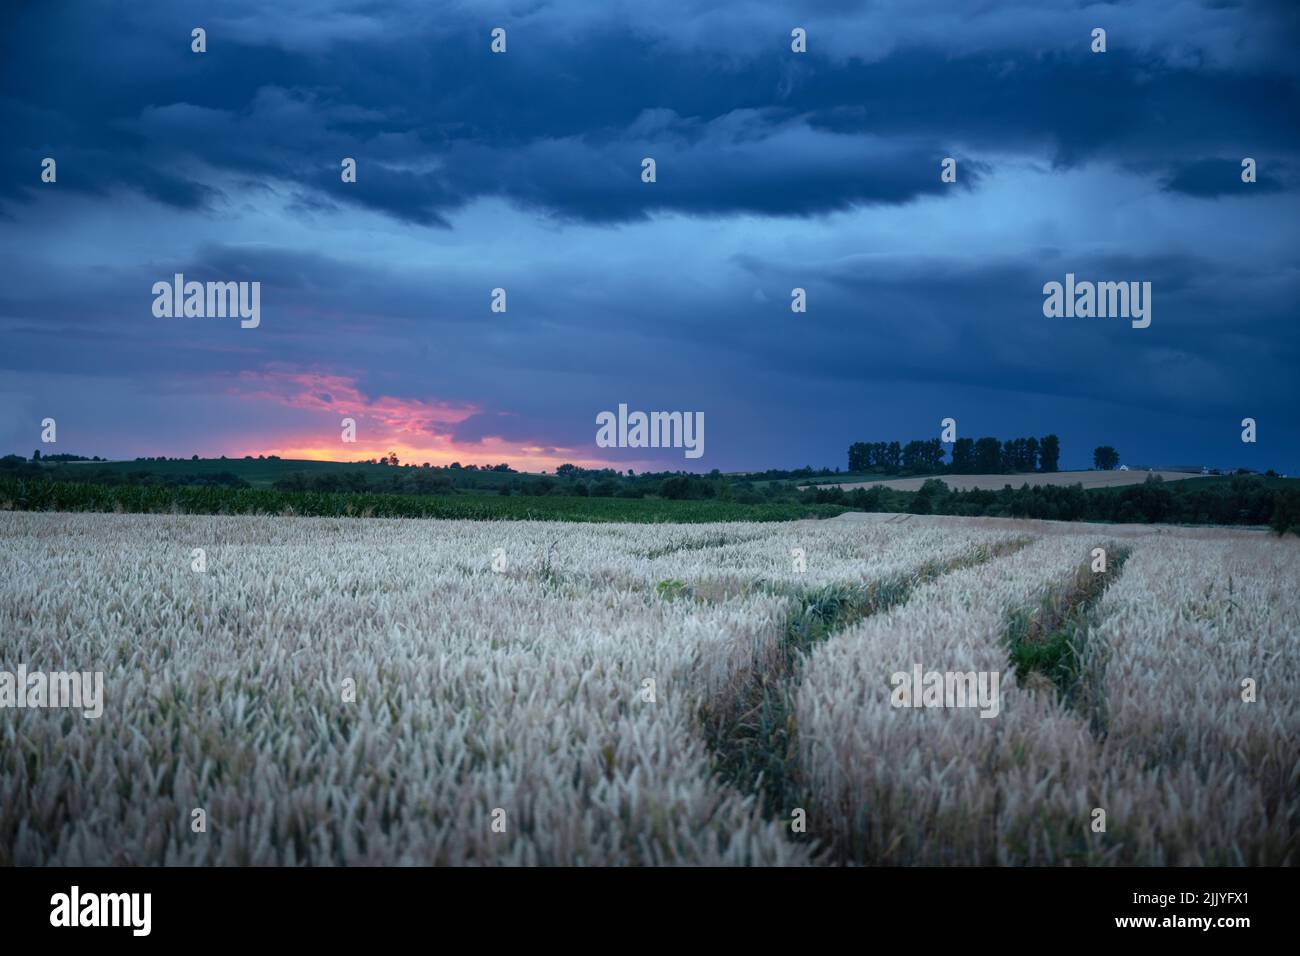 Des épillets de blé mûrs sur le terrain rural en face du ciel nocturne sombre avec des nuages pluvieux. Paysage industriel et nature. Ukraine, Europe Banque D'Images